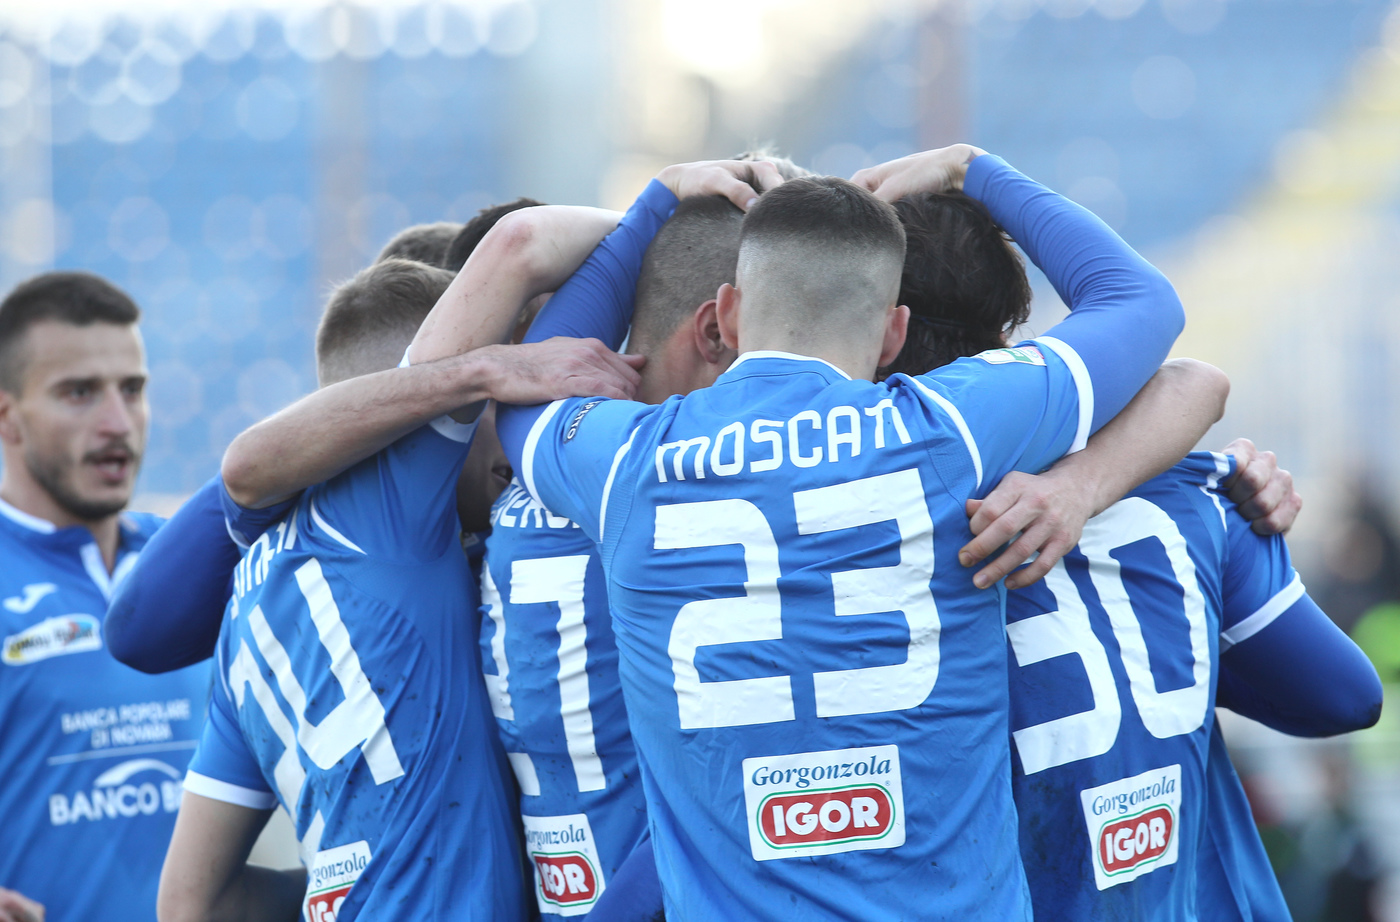 Alessandria-Novara 12 dicembre: match valido per il gruppo A della Serie C. Entrambe hanno bisogno di tornare ai 3 punti.